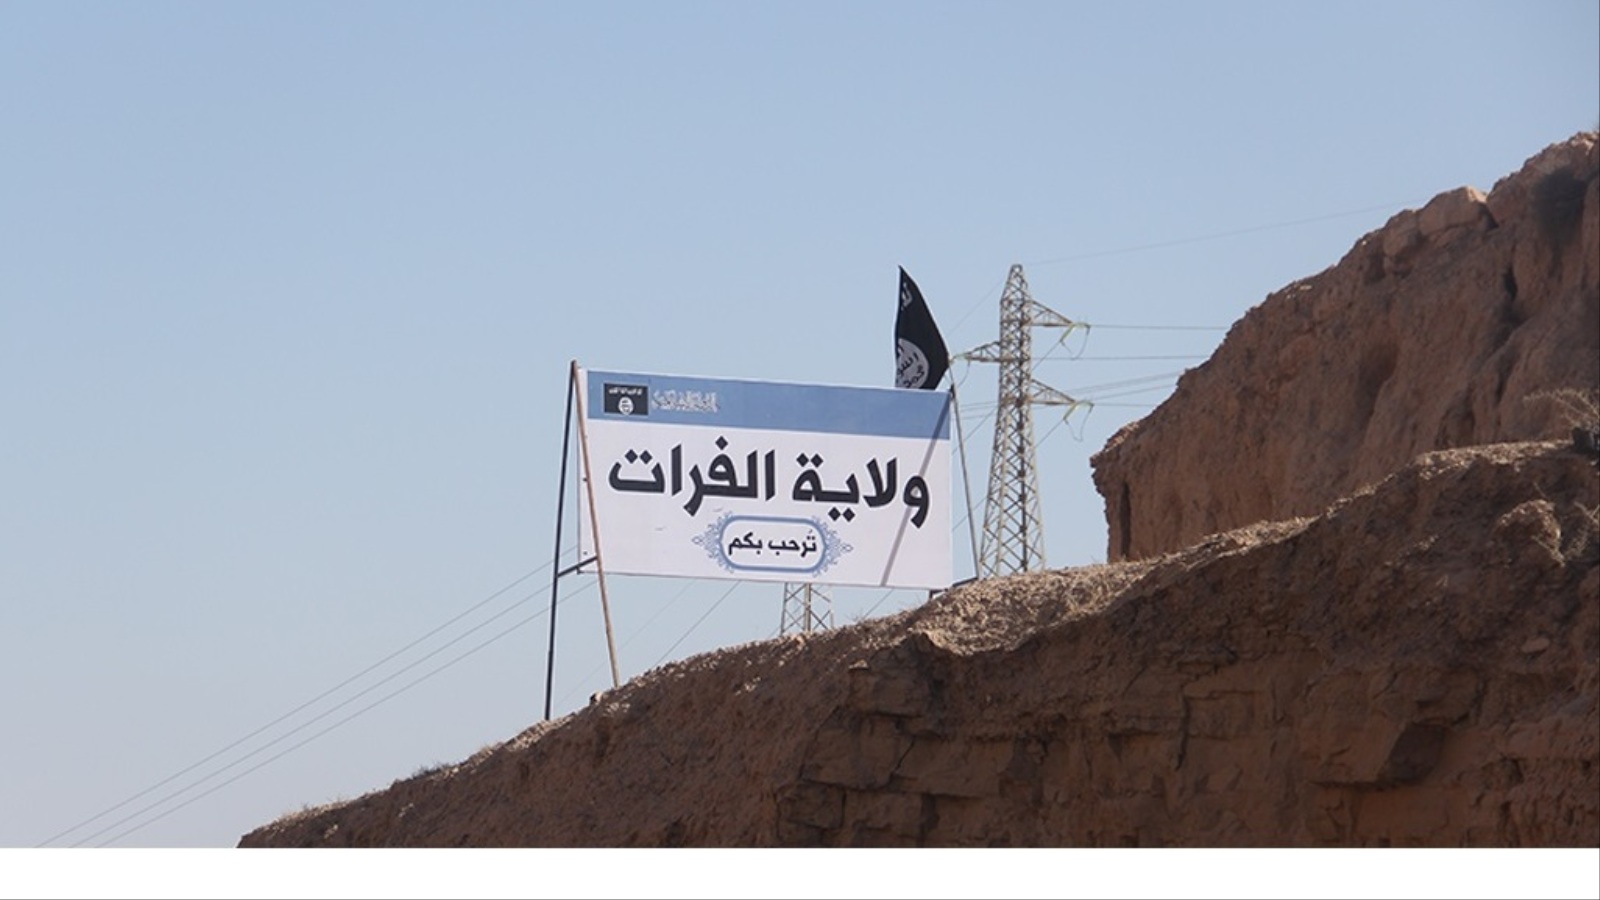 ‪تنظيم الدولة الإسلامية غيّر اسم مدينة 